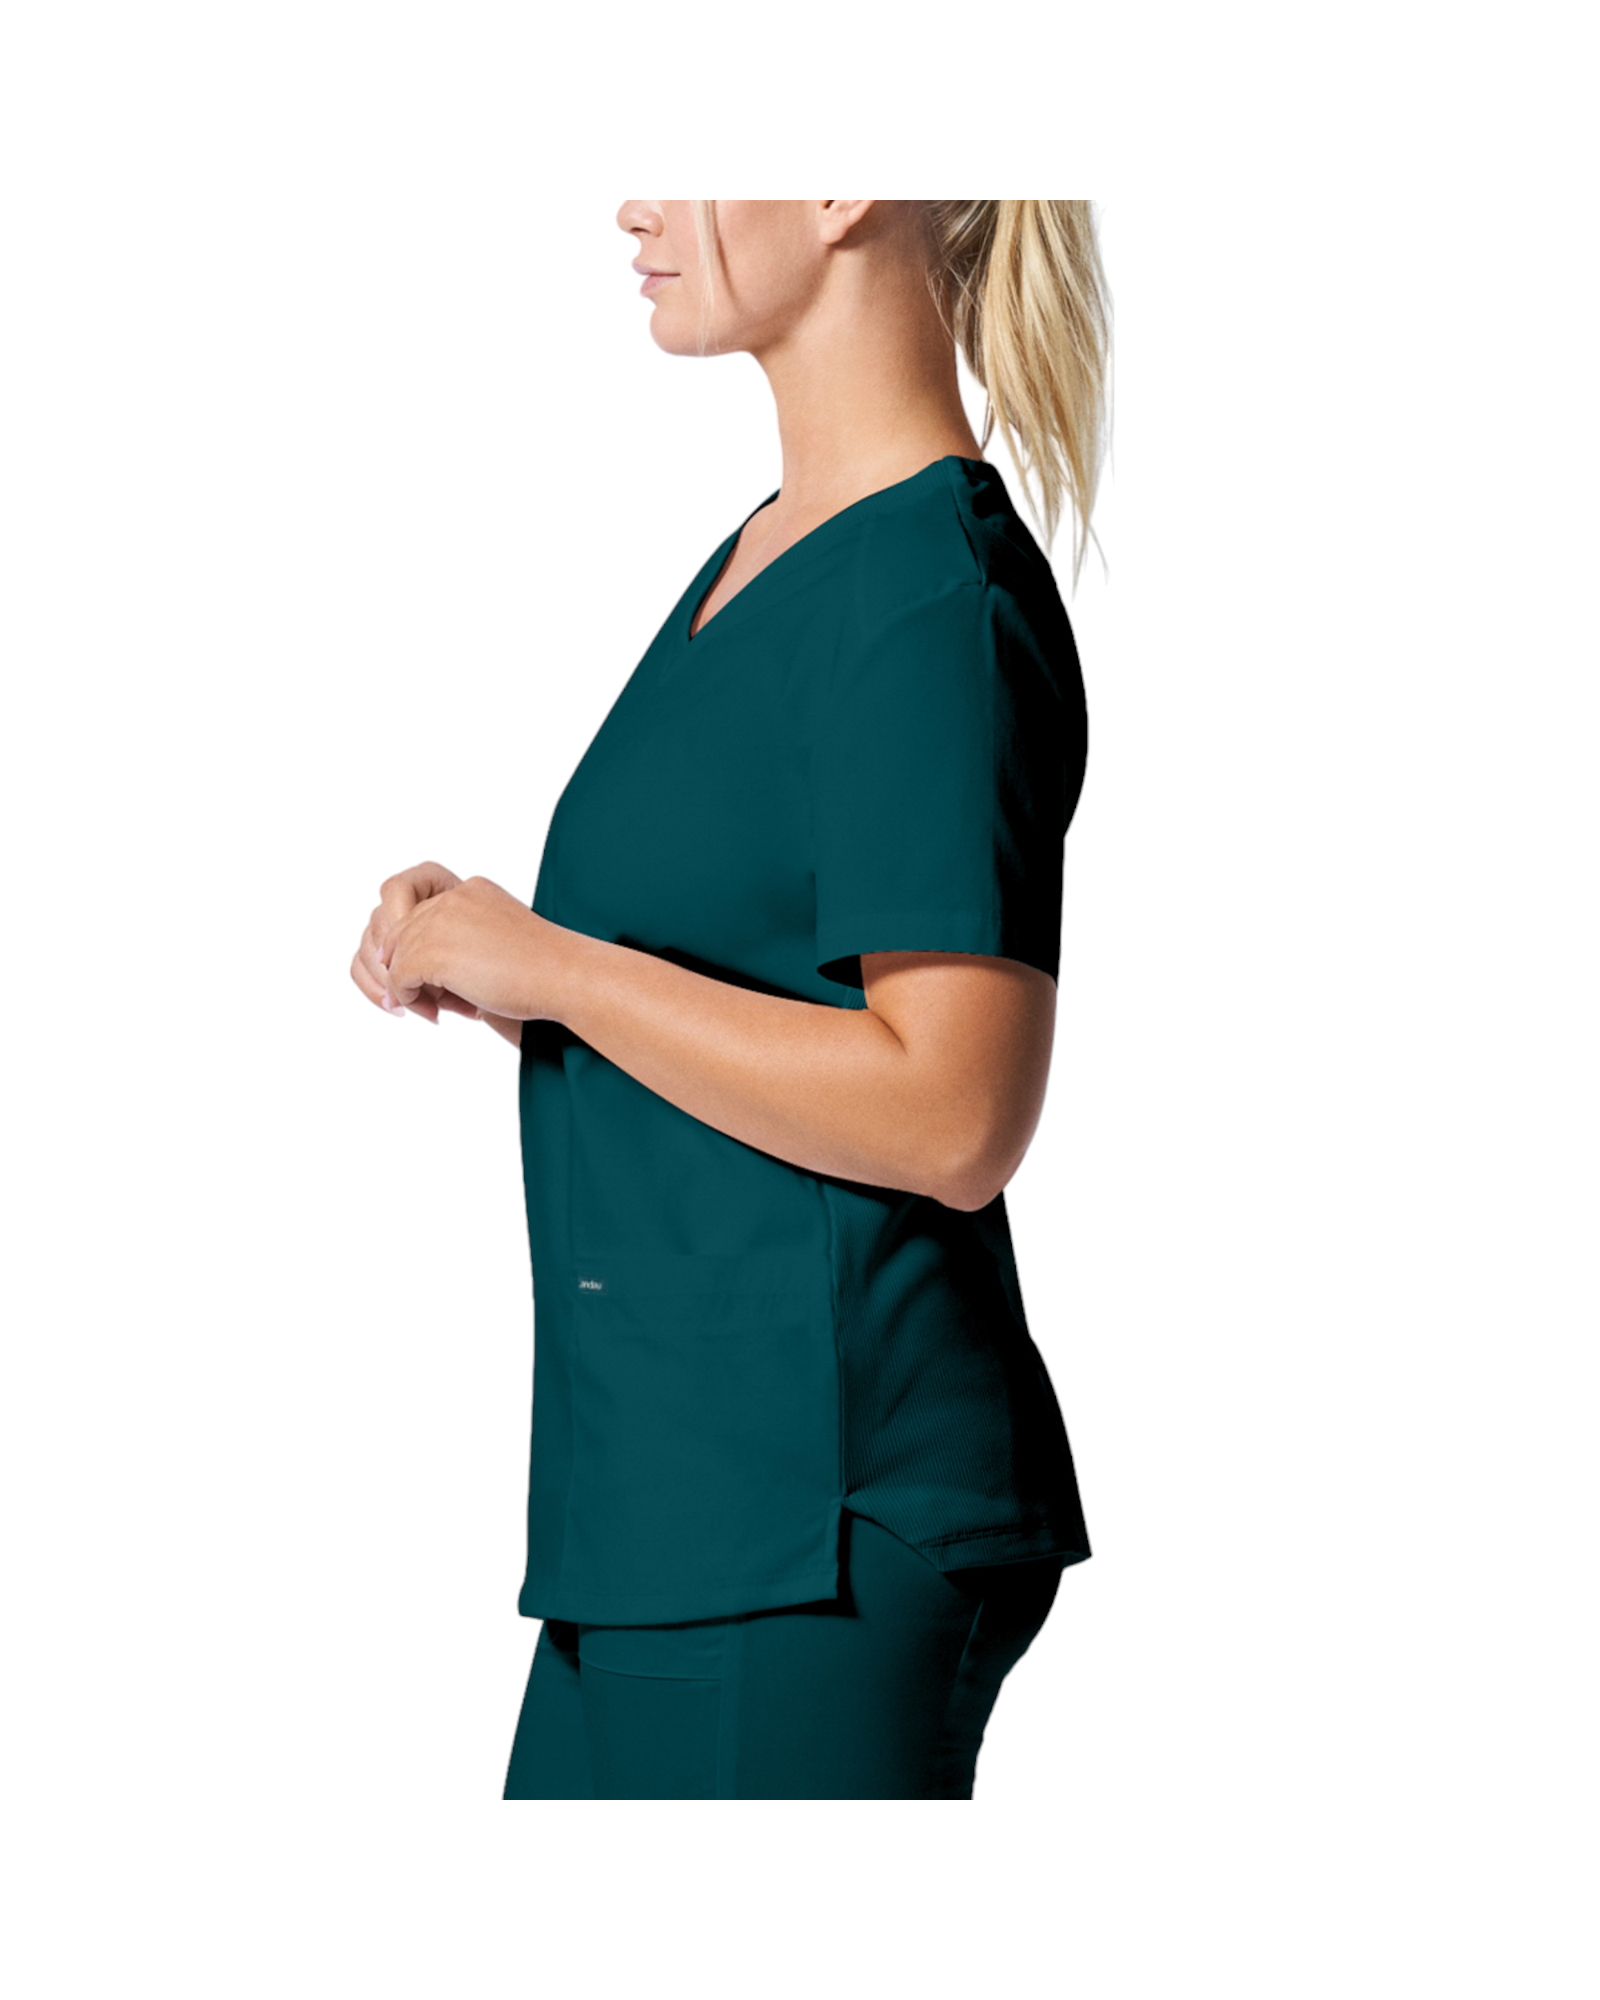 Uniforme de marque landau pour femmes taille plus. Travailleuses du domaine de la santé. LT105-OS couleur Caraibe, col en V.